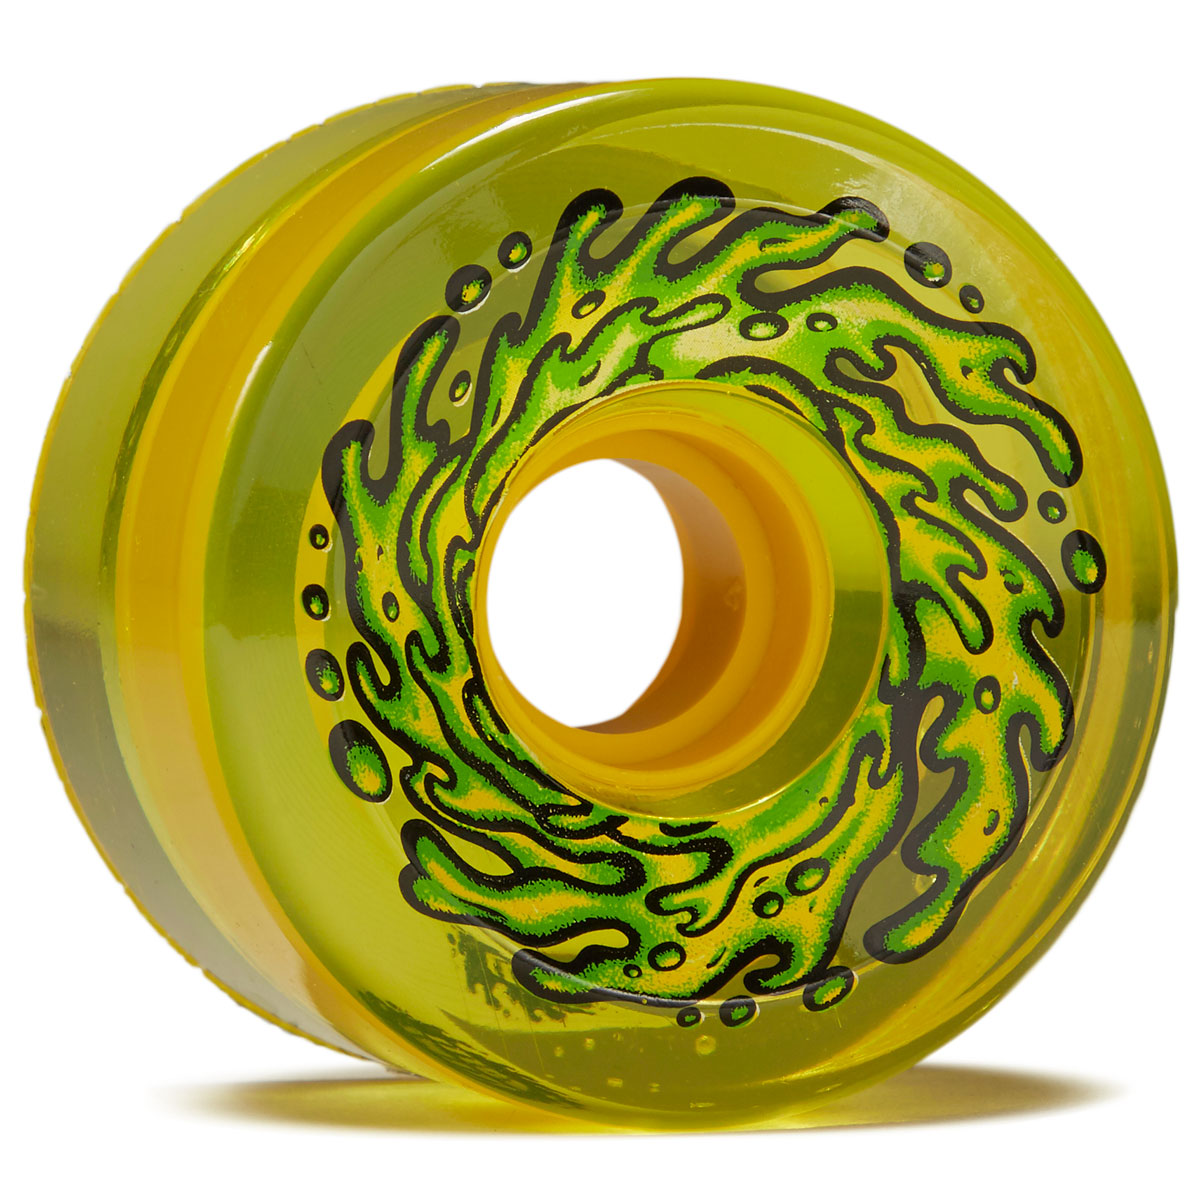 Slime Balls OG Slime 78a Skateboard Wheels - Trans Yellow - 66mm image 1